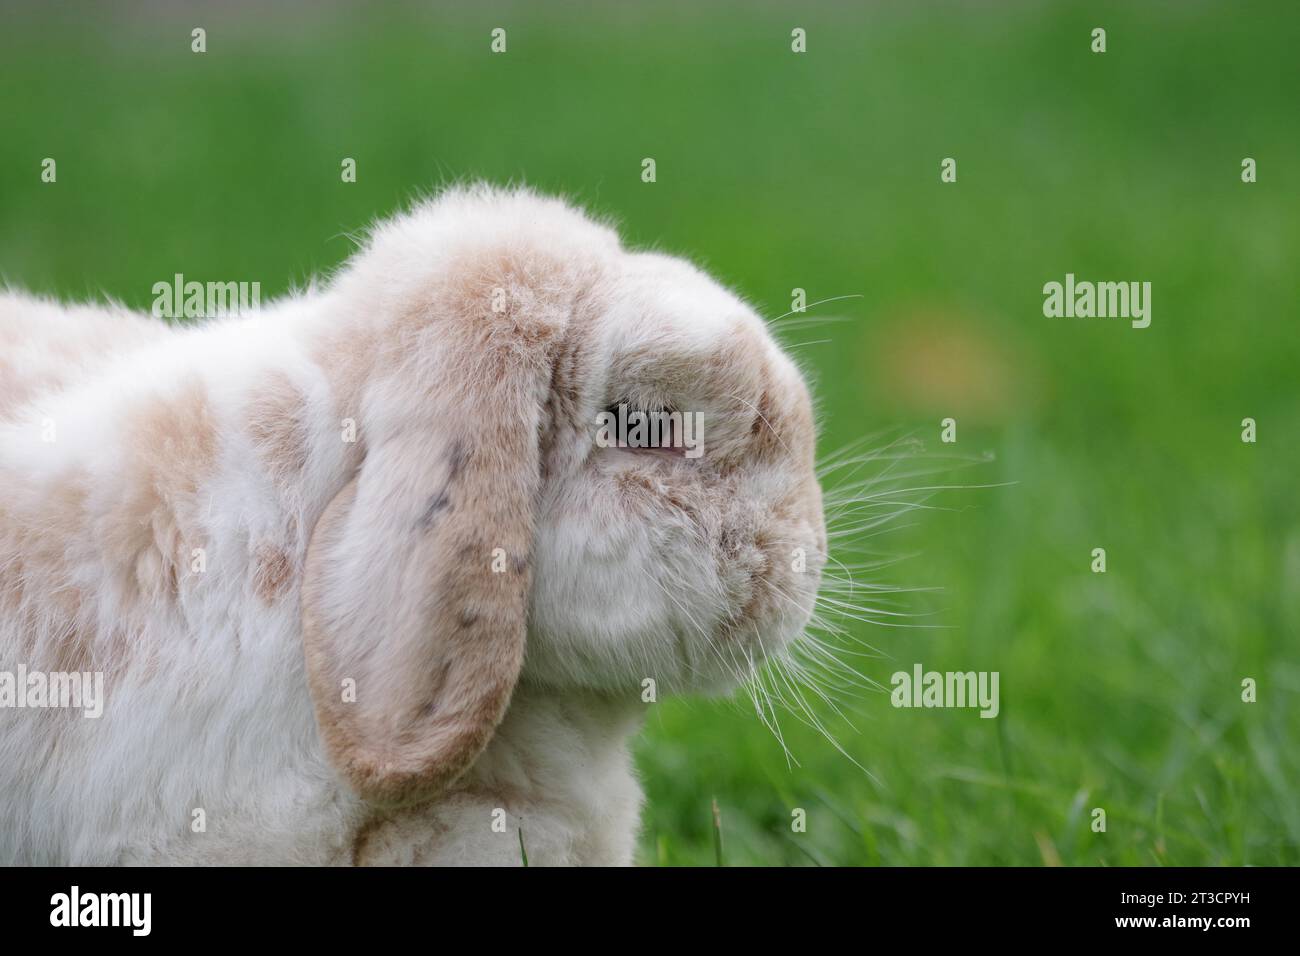 Conejo, carnero conejo, vista lateral, orejas floppy, piel, bigotes, lindo, hierba, retrato de un conejo con orejas floppy Foto de stock